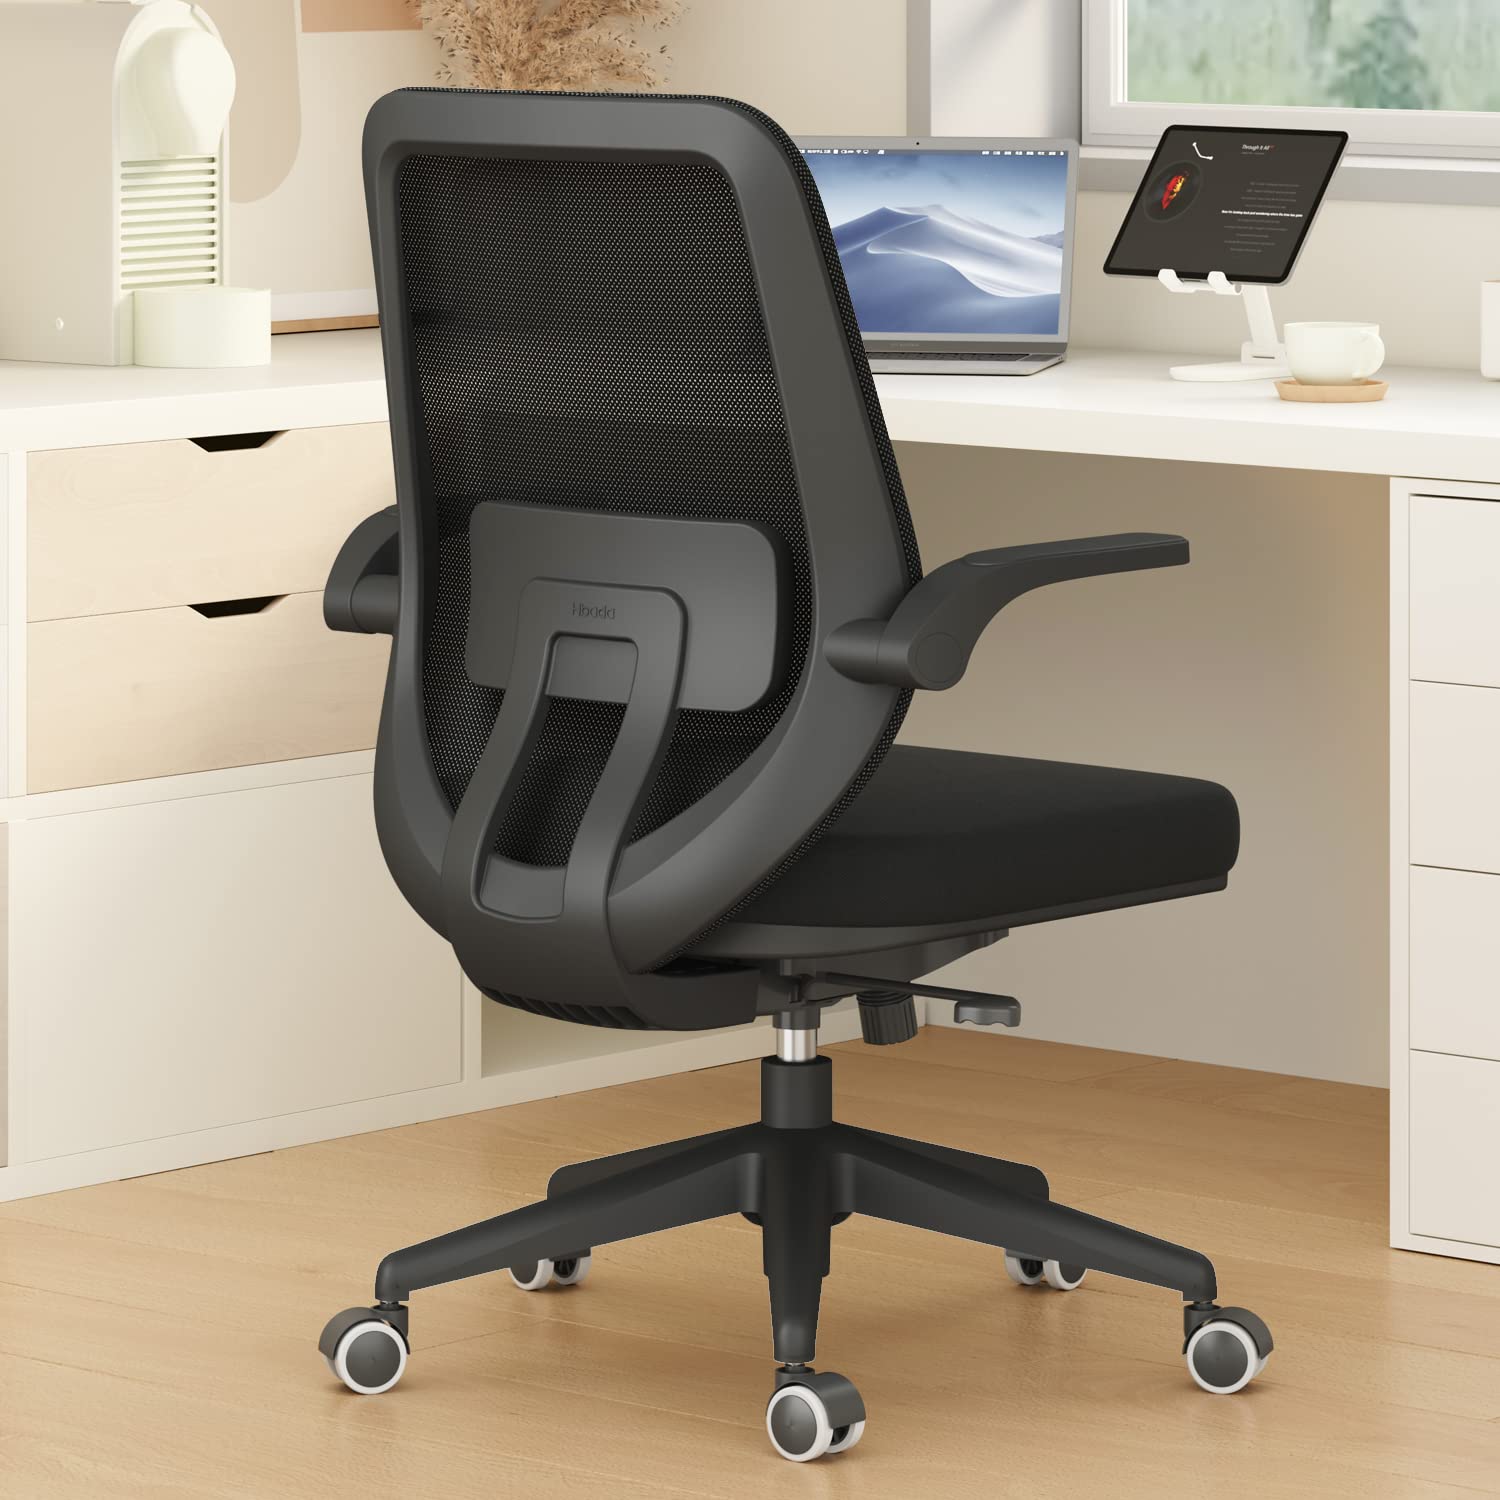 Hbada كرسي مكتب - مكتب عمل - كرسي دوار - كراسي مريحة للمنزل مع أذرع قابلة للطي وإرتفاع قابل للتعديل